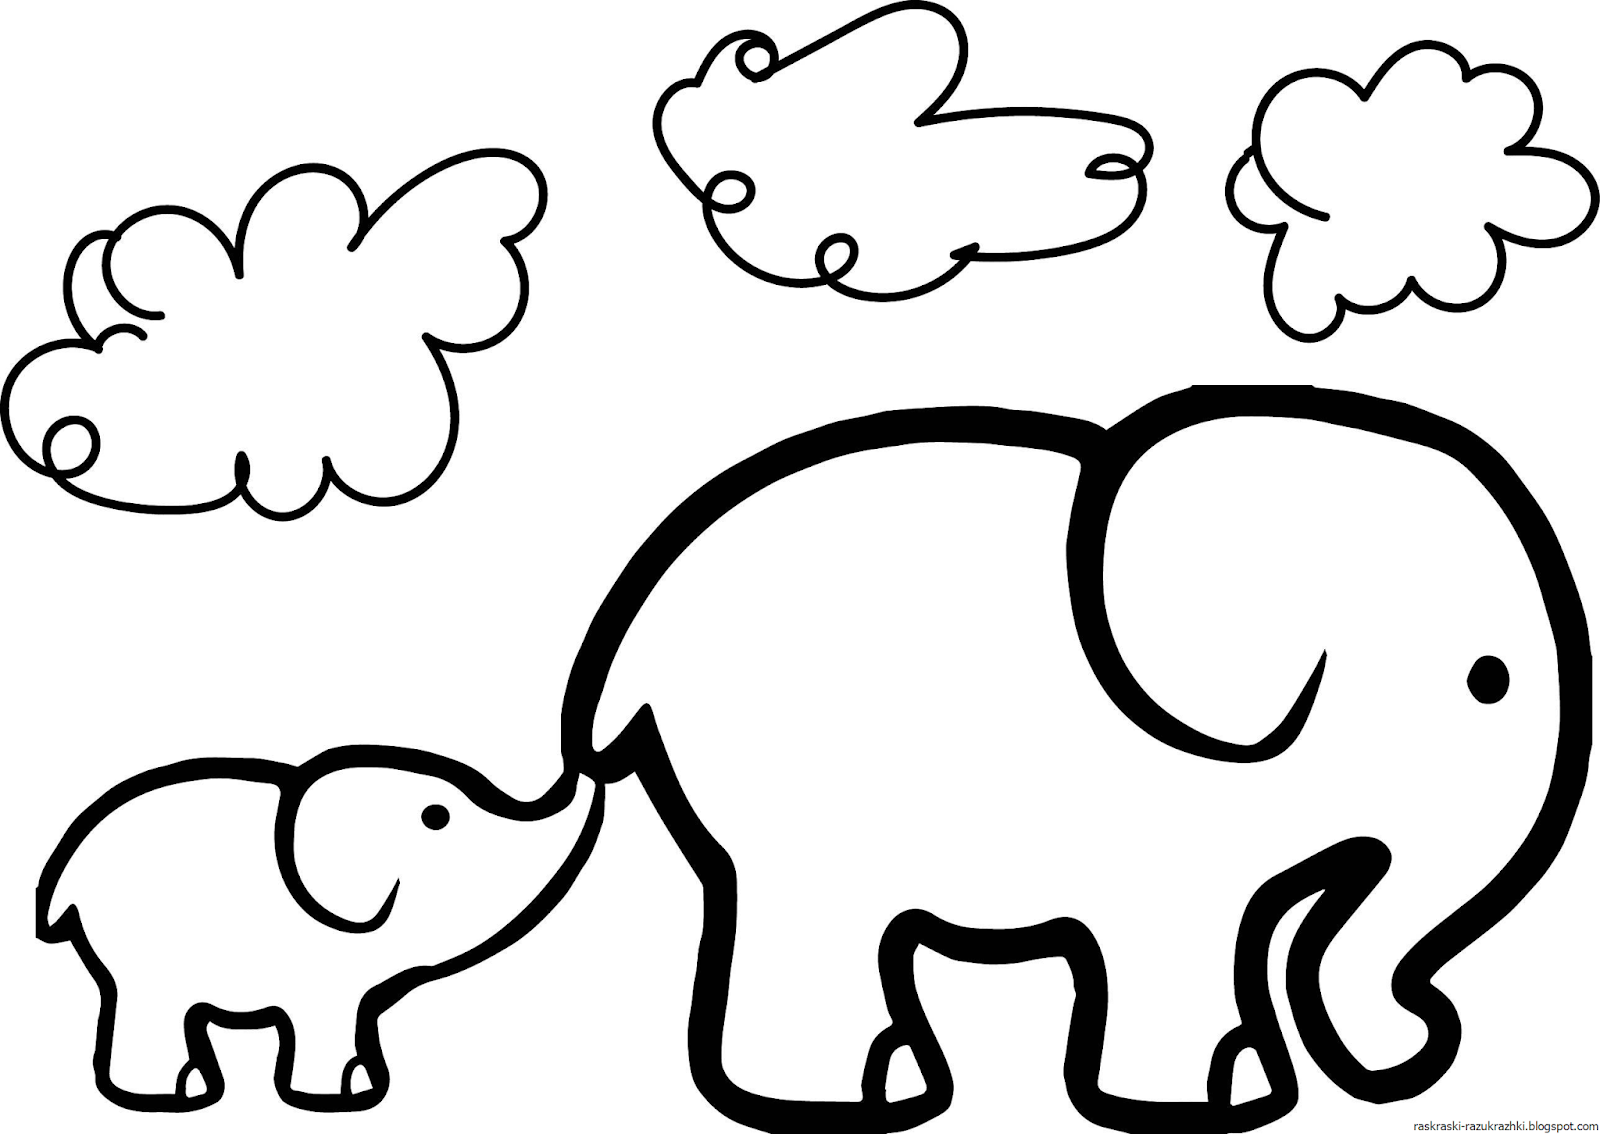 Раскраски контуры распечатать. Слоненок раскраска для детей. Слон раскраска для детей. Слоны раскраска для детей. Слоник раскраска для детей.